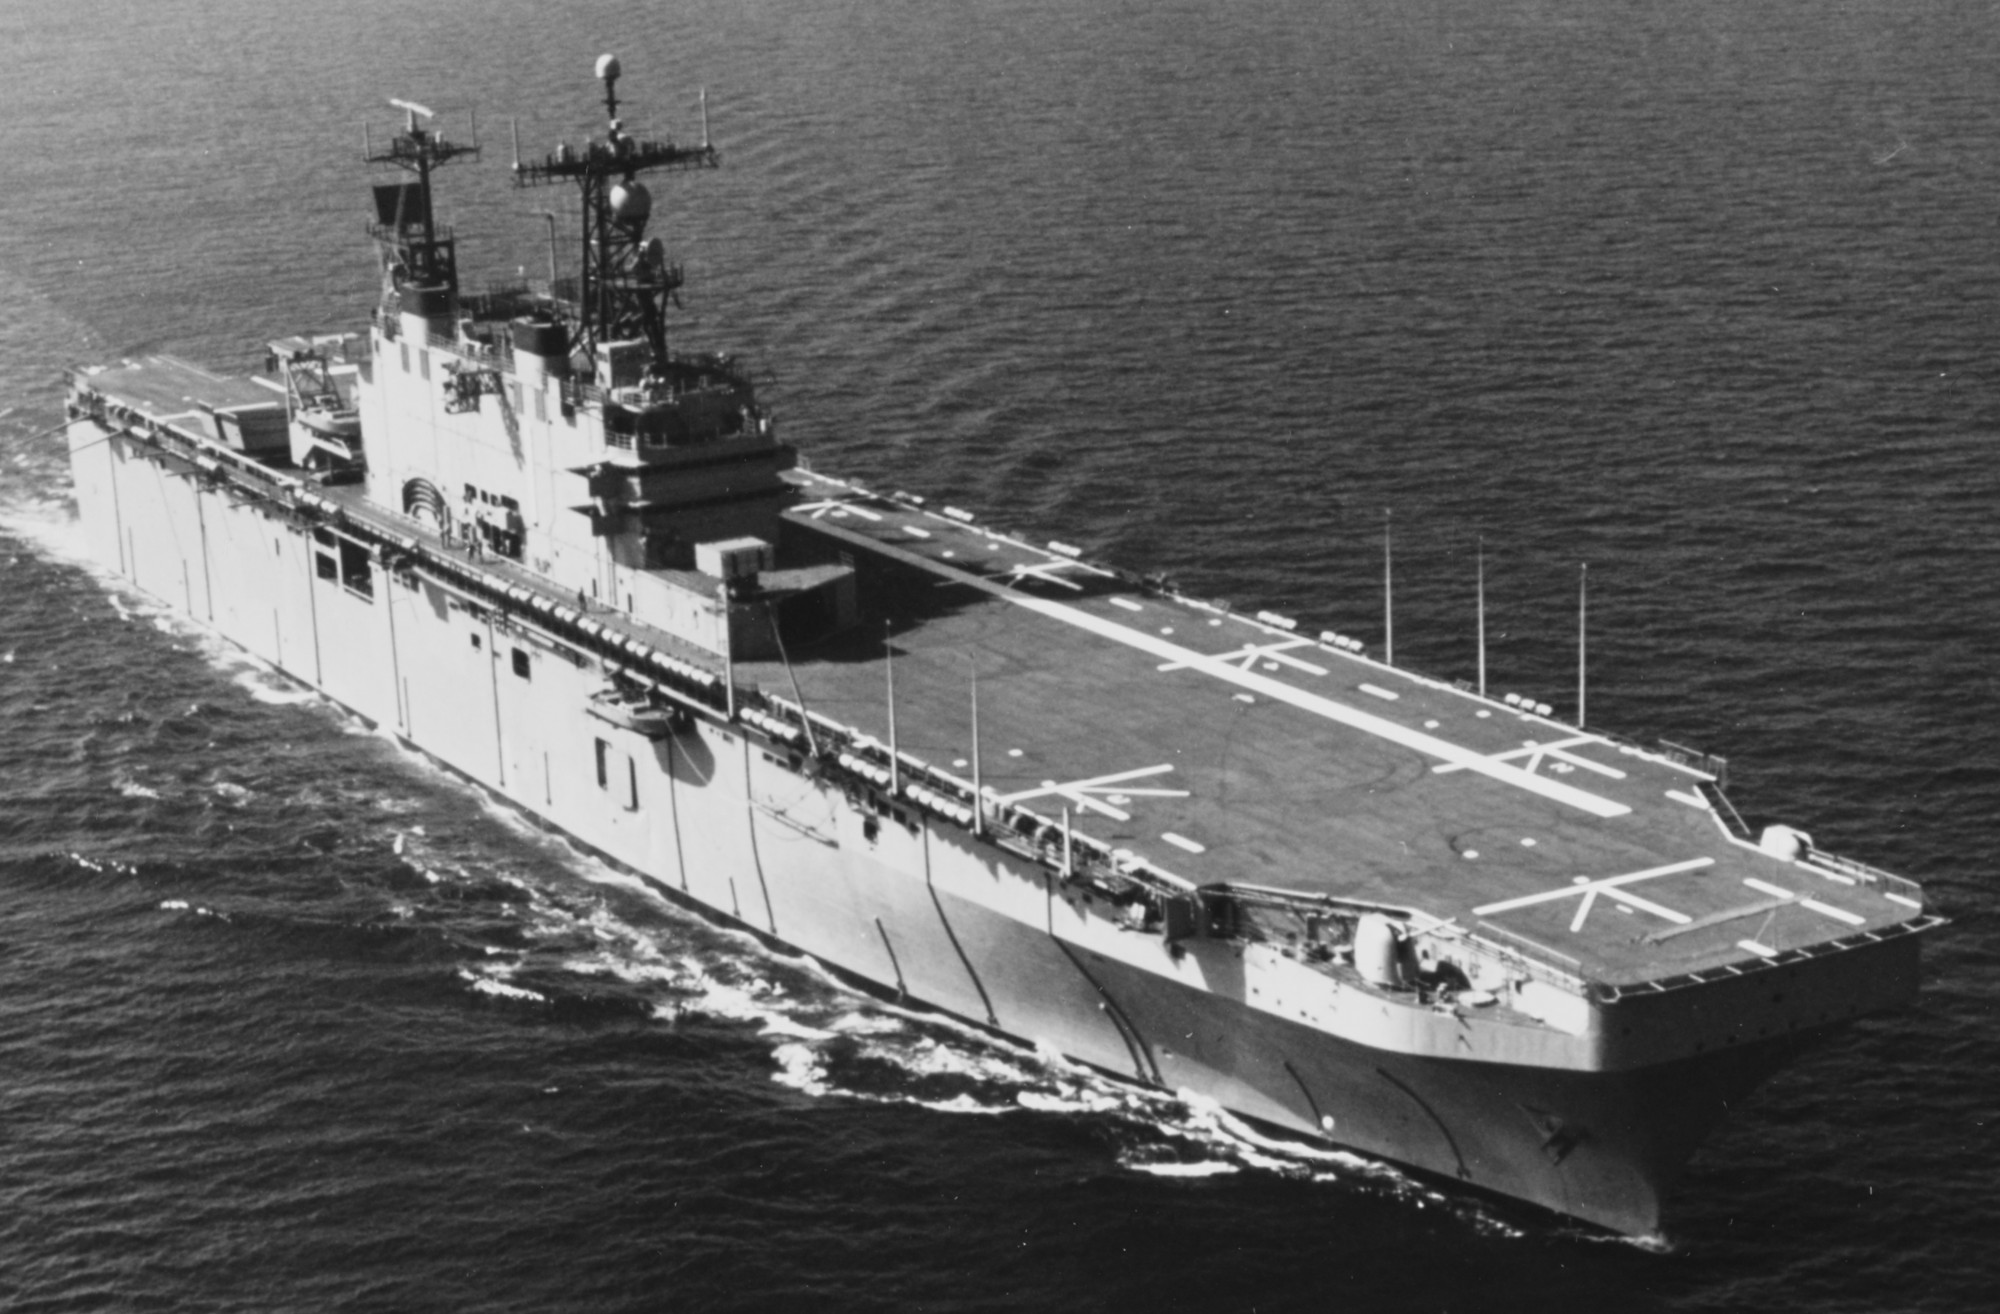 lha-1 uss tarawa amphibious assault ship us navy 13